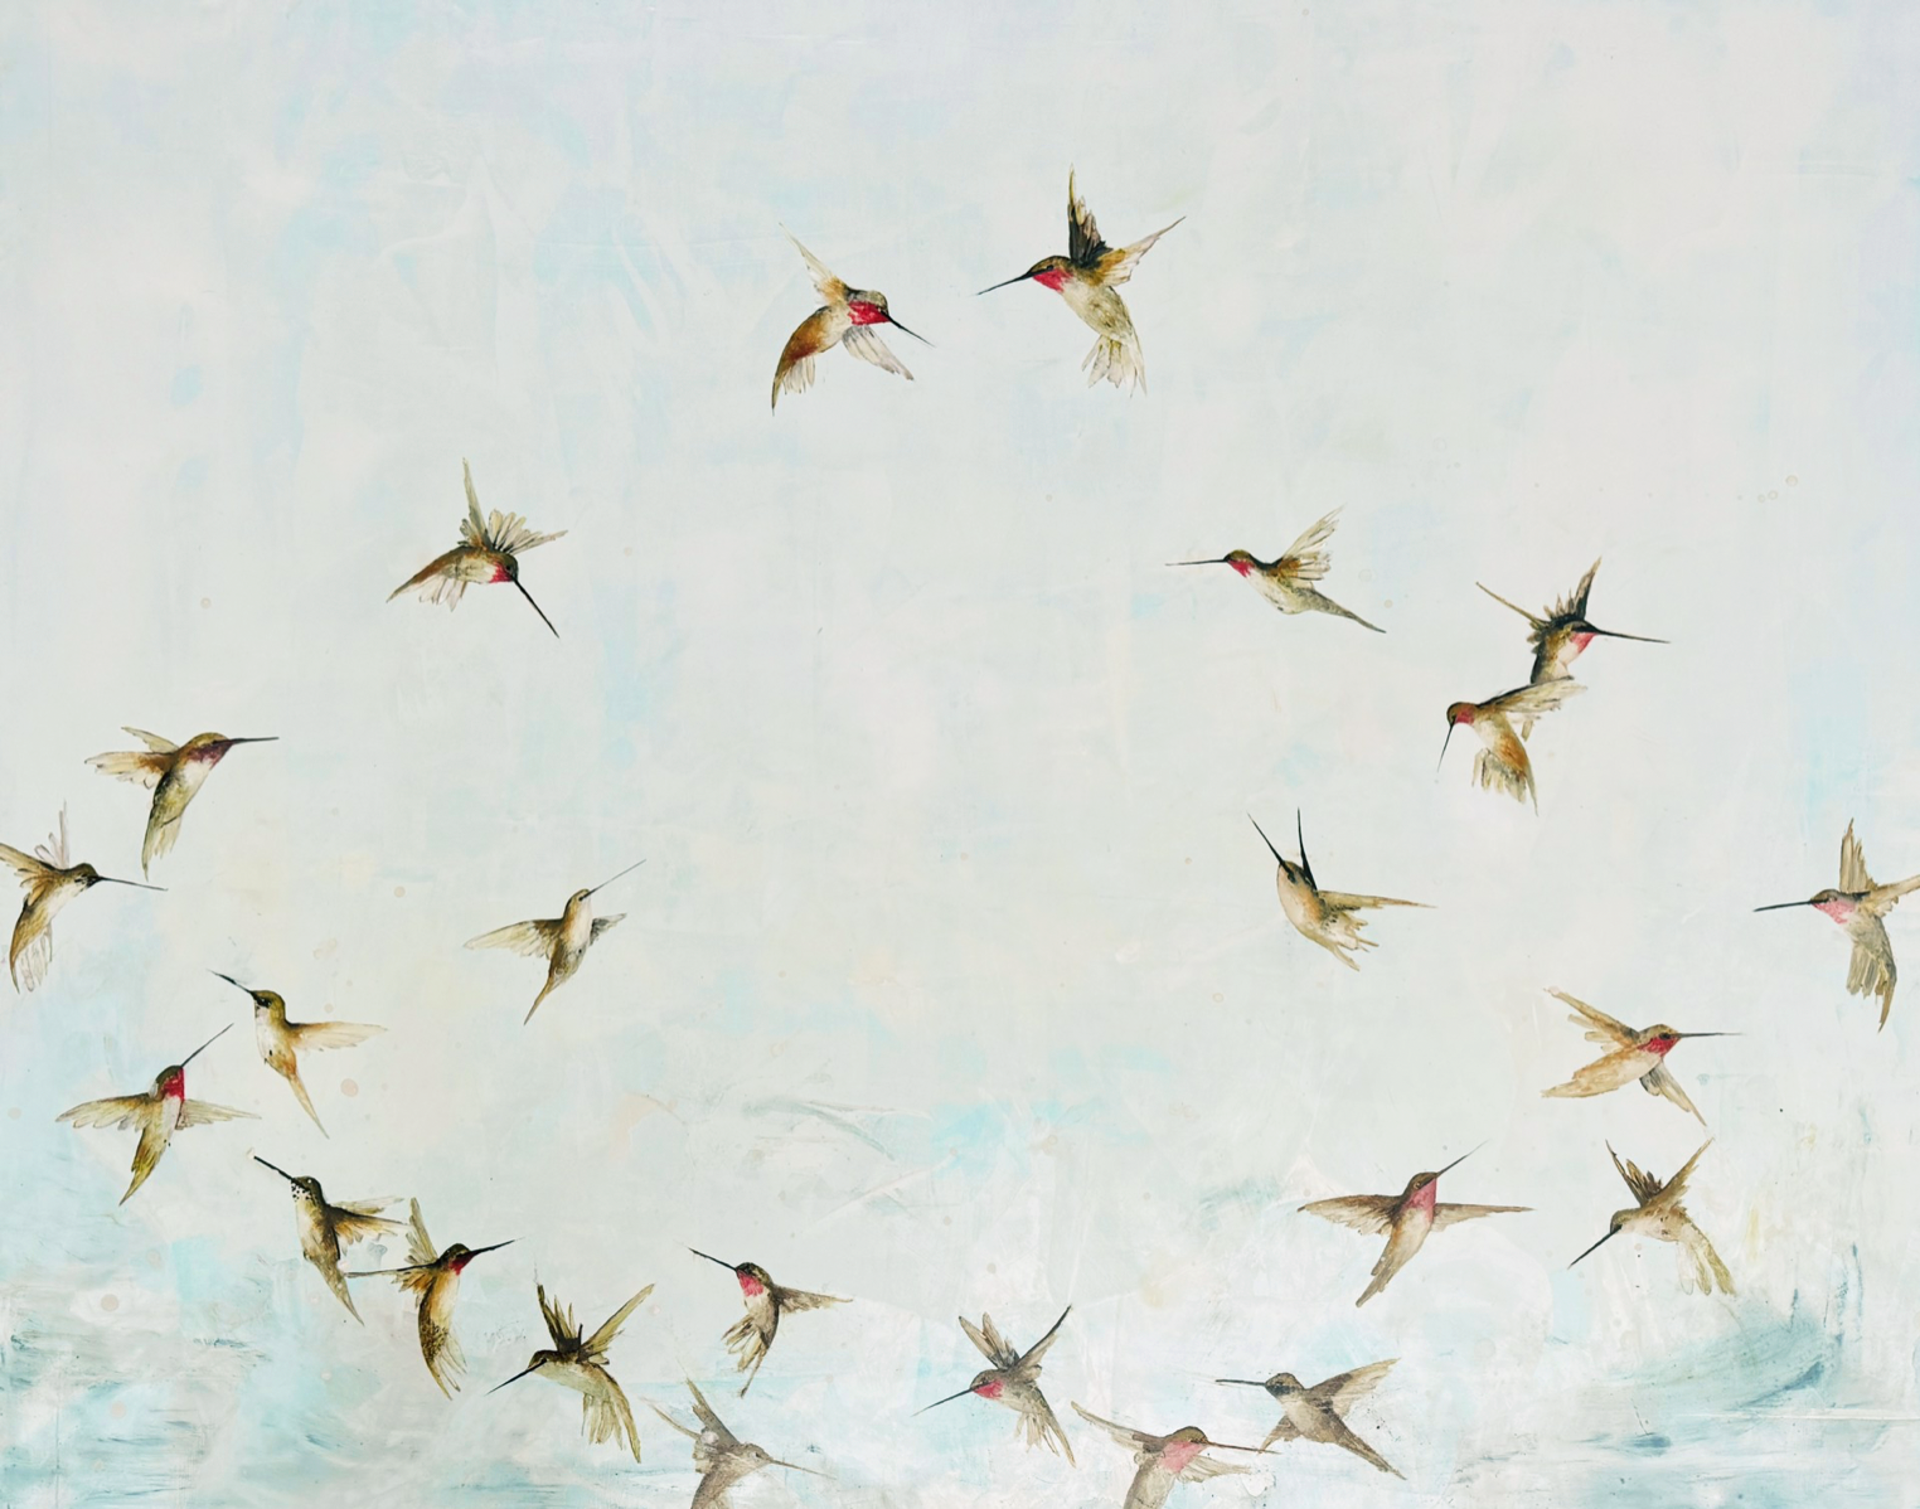 Little Bird, Fly! by Jenna Von Benedikt